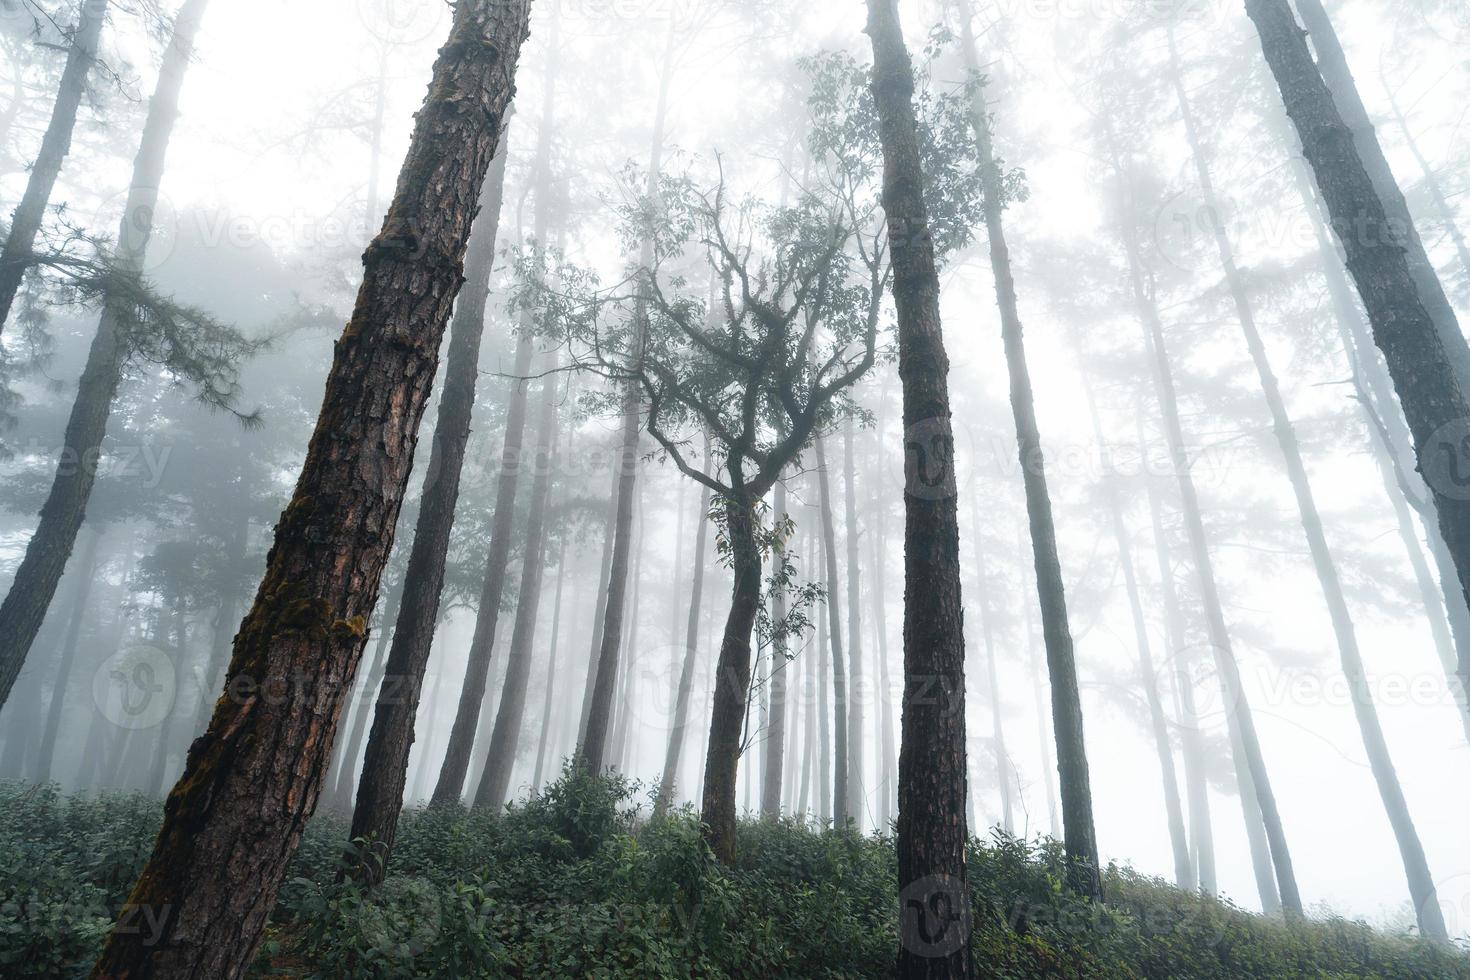 forêt brumeuse et pins photo